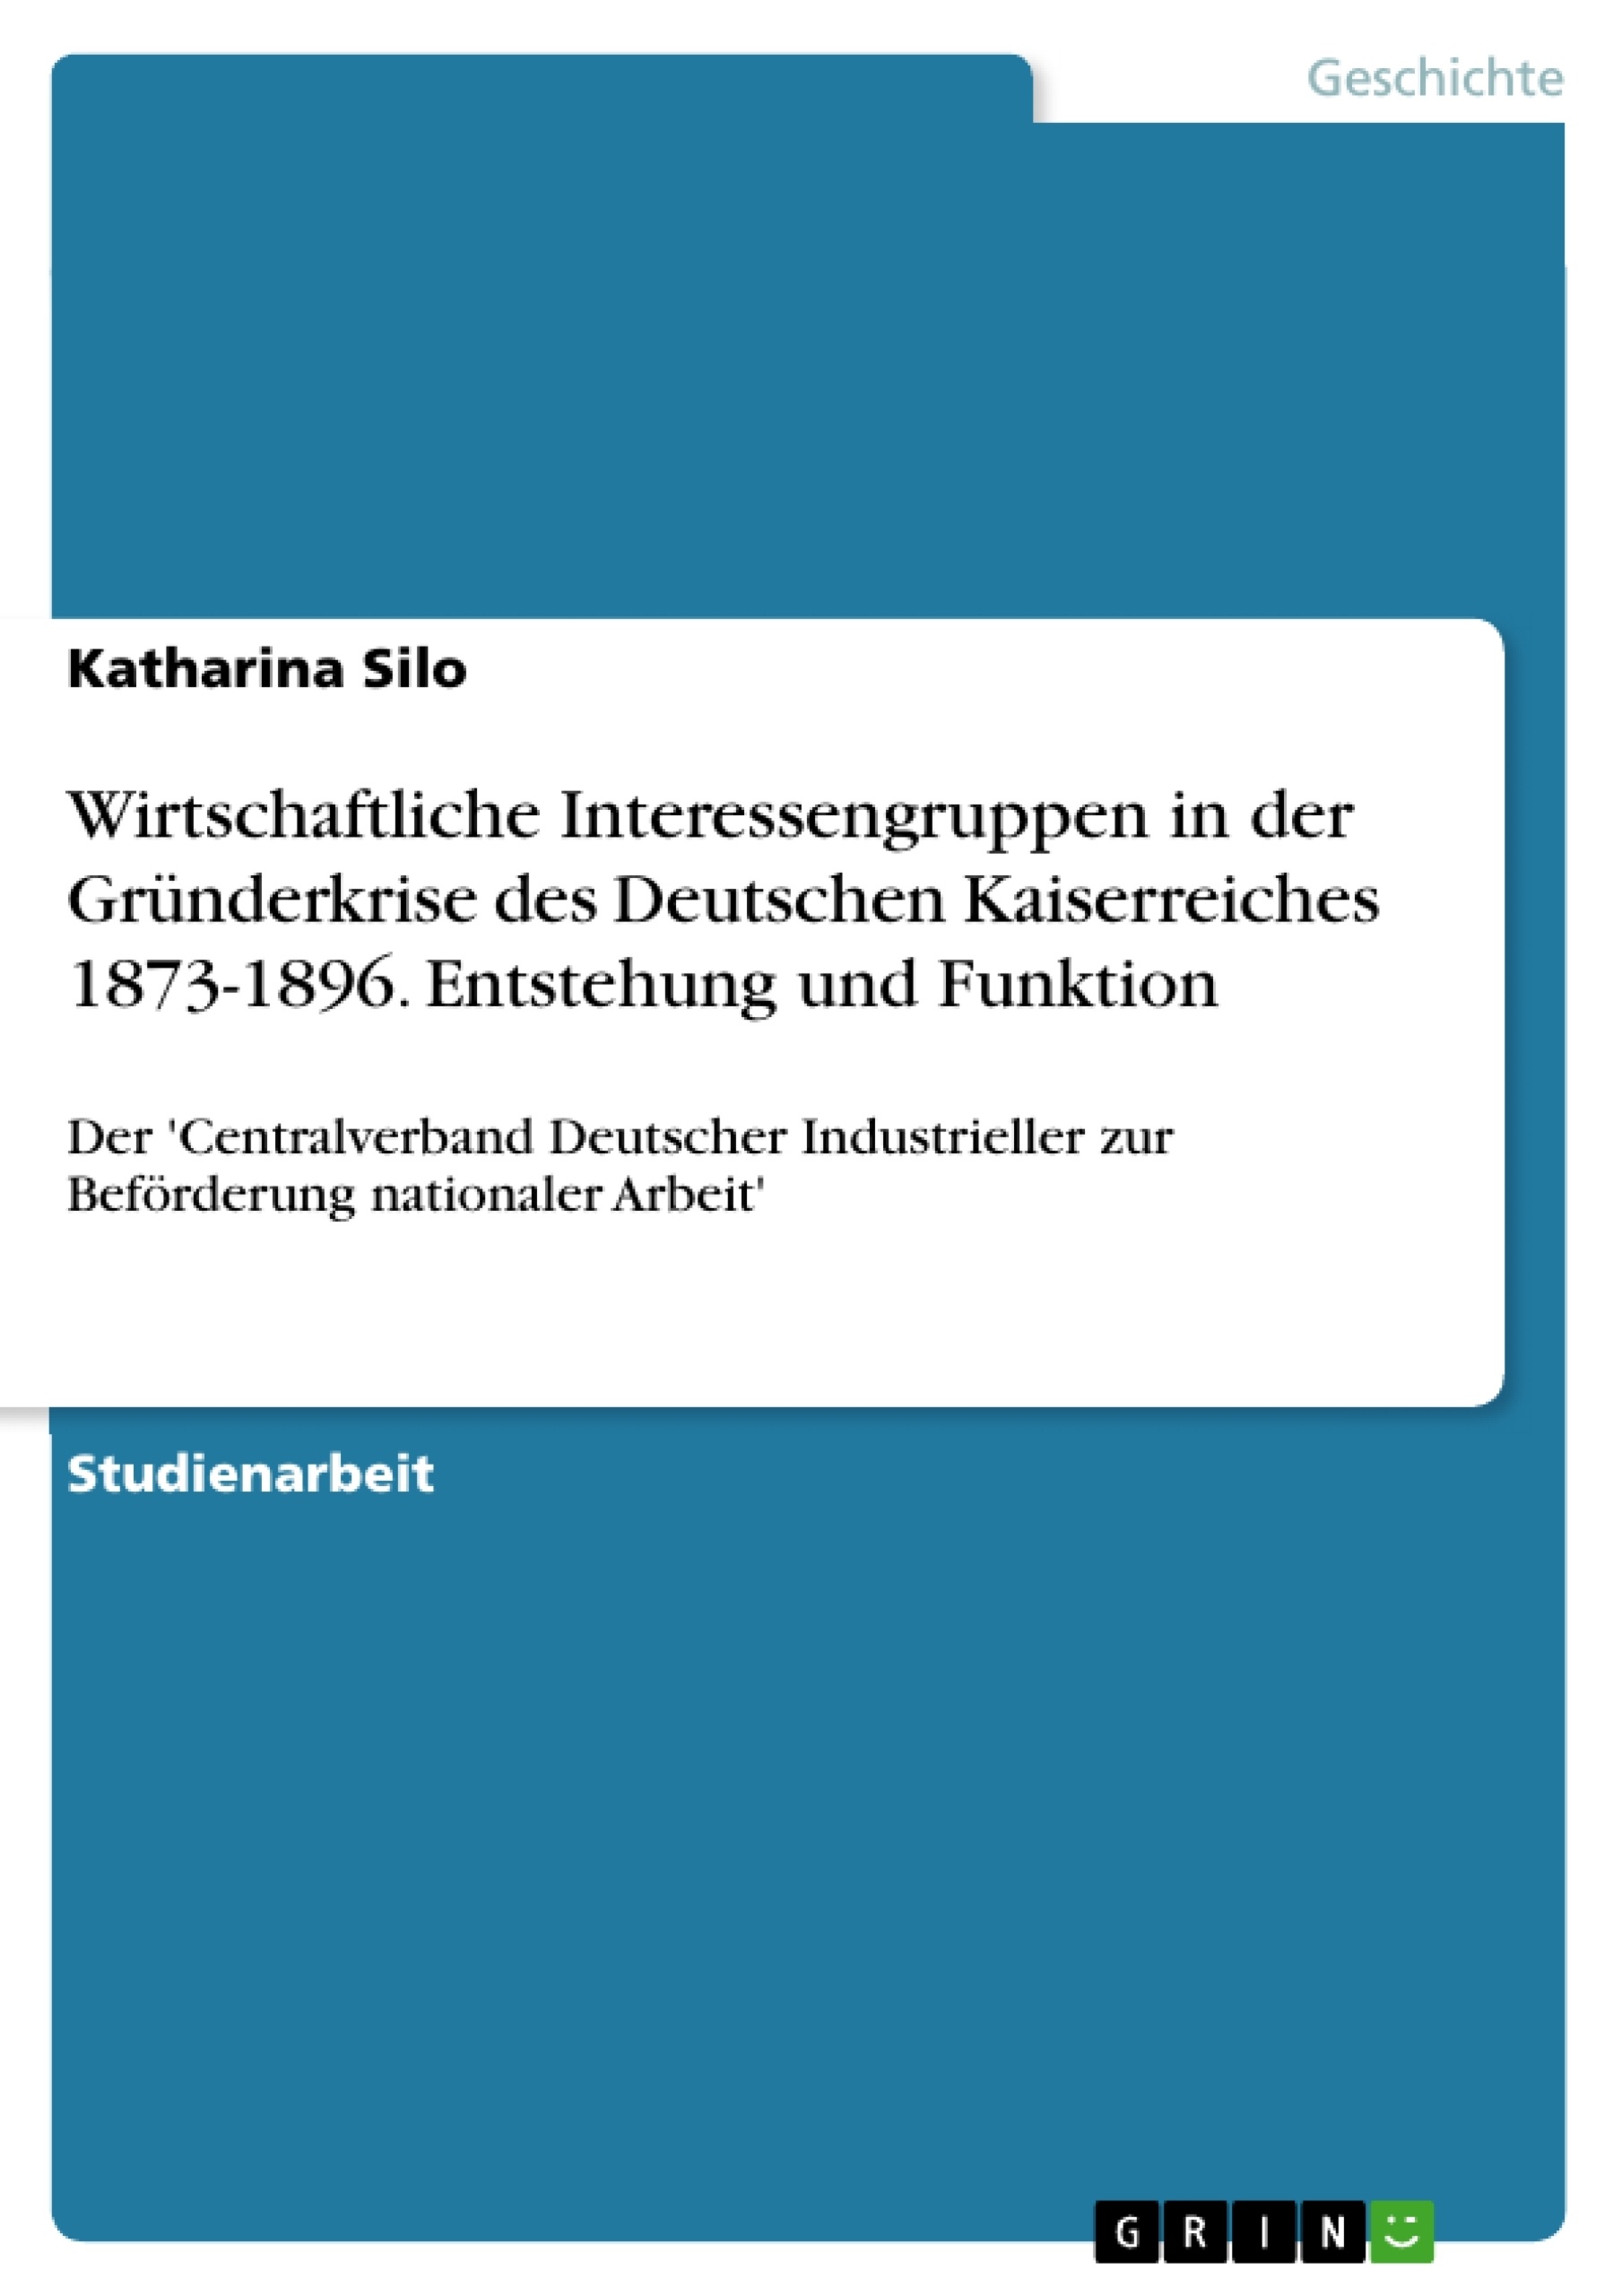 Title: Wirtschaftliche Interessengruppen in der Gründerkrise des Deutschen Kaiserreiches 1873-1896. Entstehung und Funktion